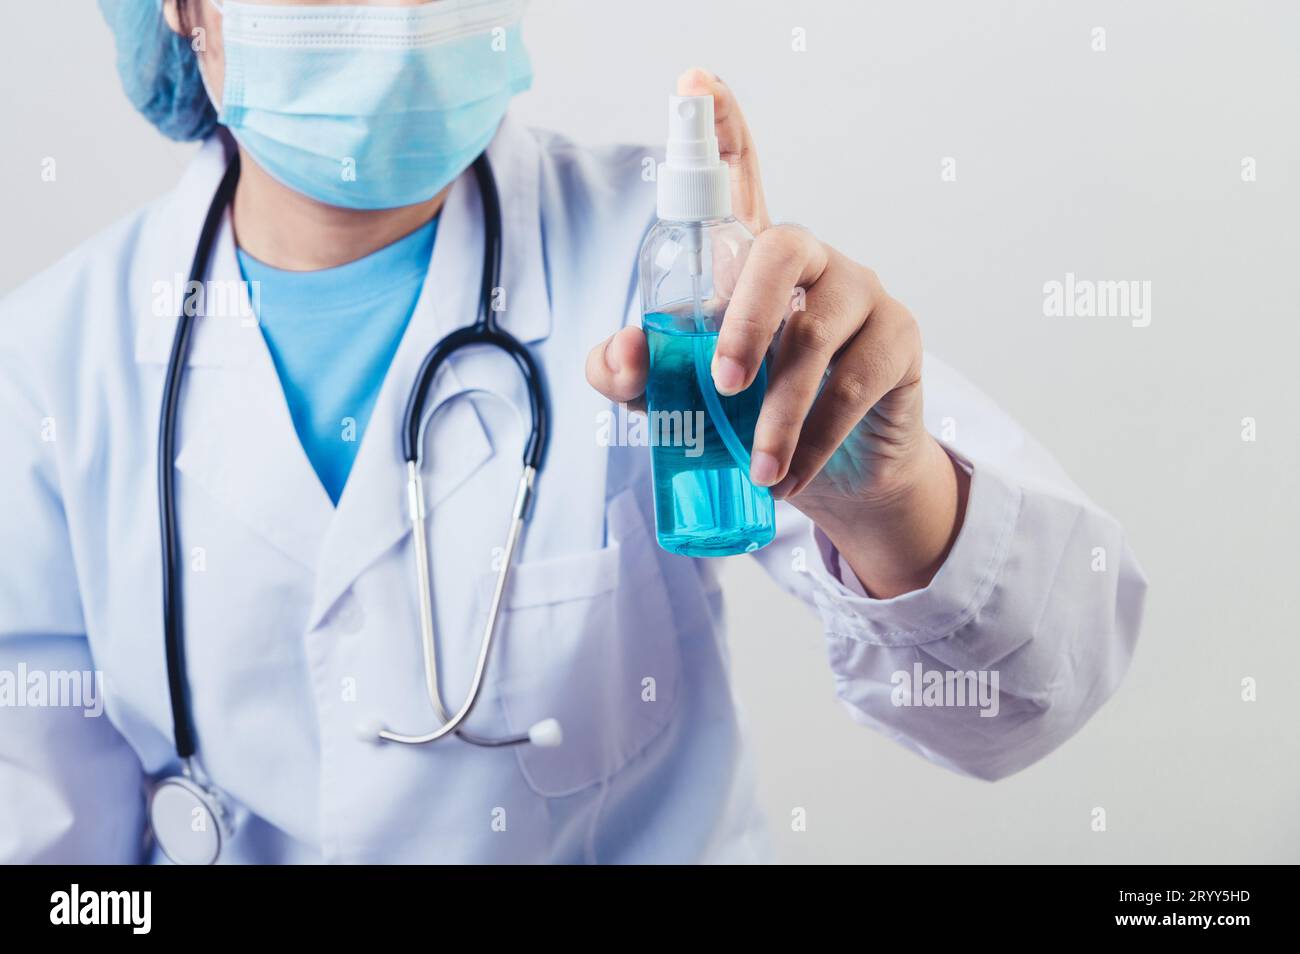 Medico spruzza disinfettante per le mani o dispenser di gel per pulire le mani e uccidere virus e batteri in aria dopo la visita dei pazienti. Foto Stock